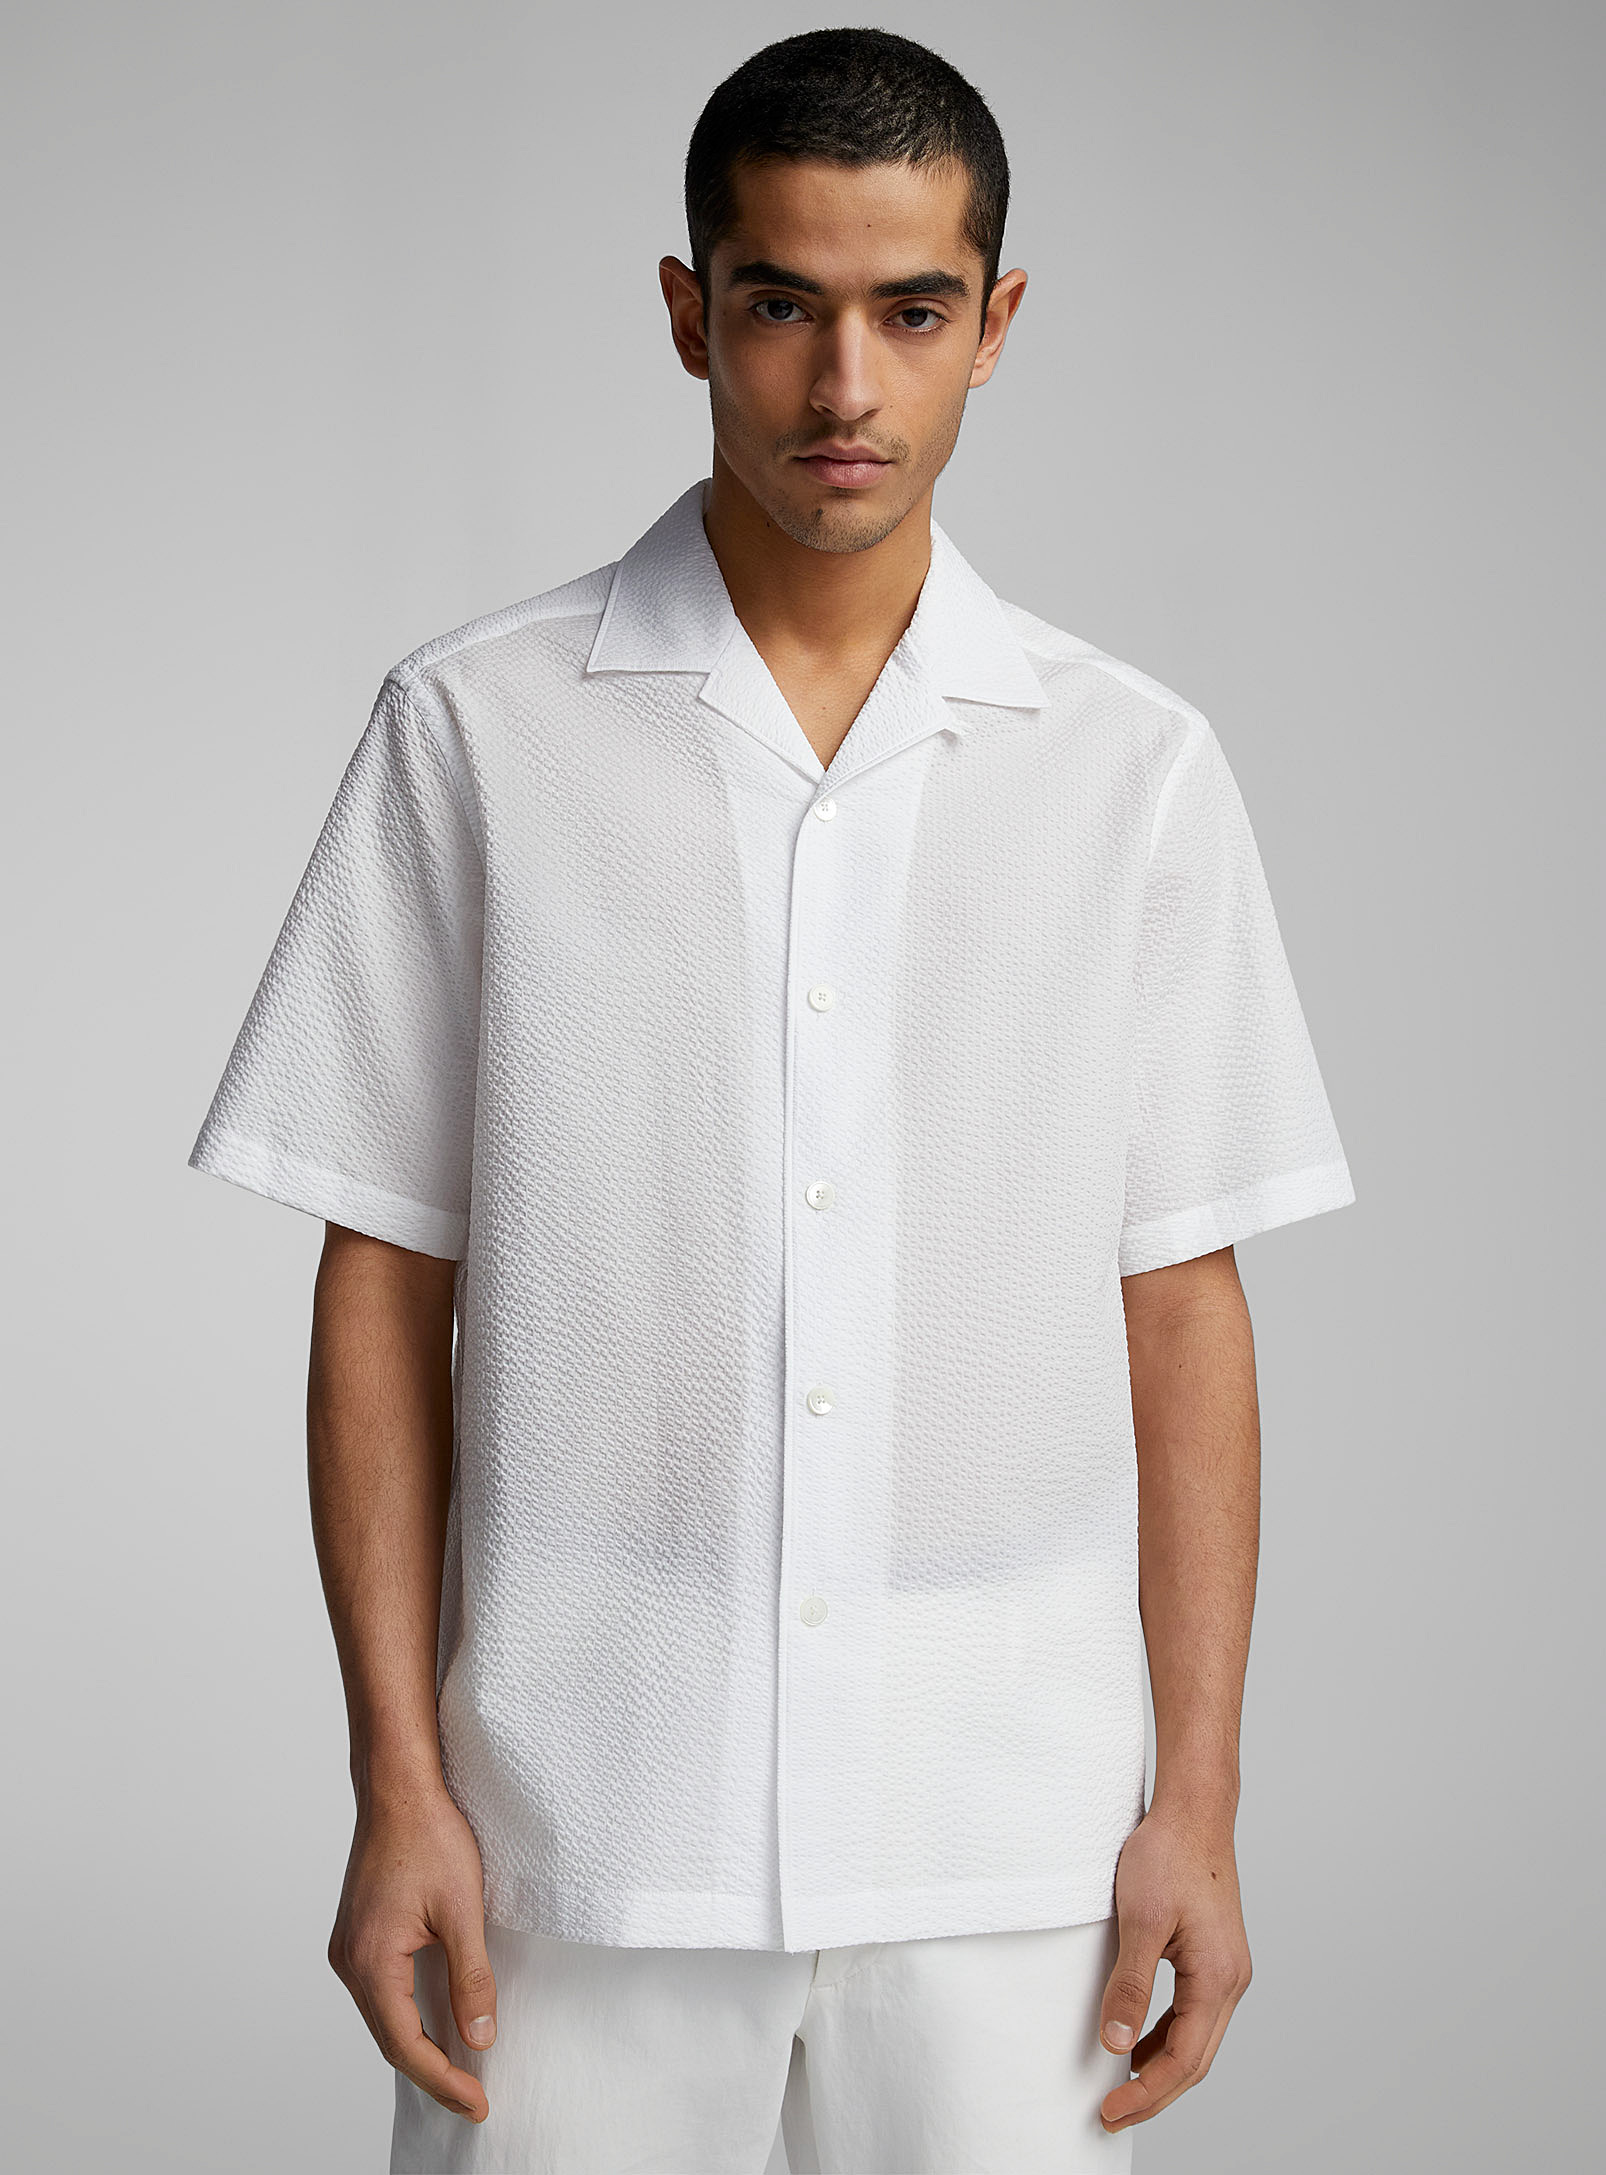 Zegna - La chemise blanche coton gaufré